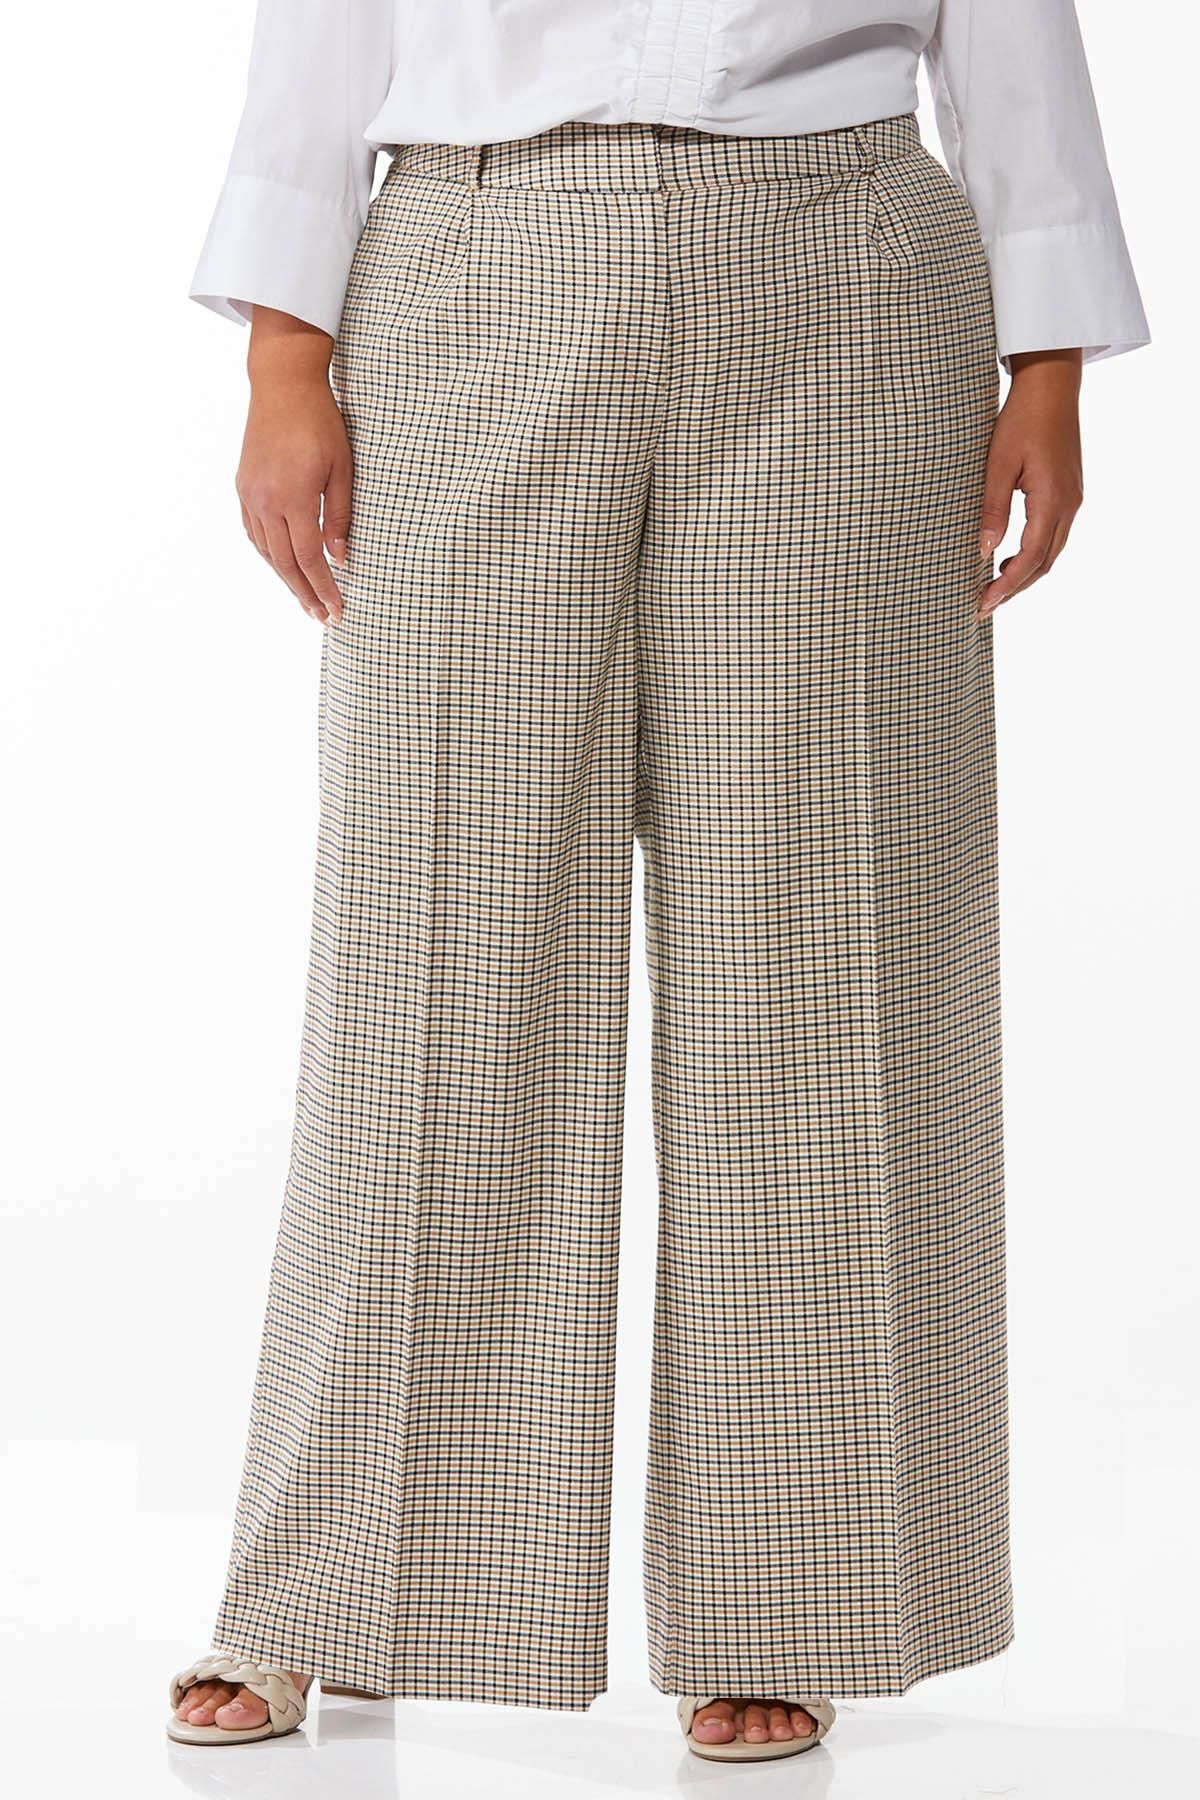 Plus Size Plaid Trouser Pants | Cato Fashions